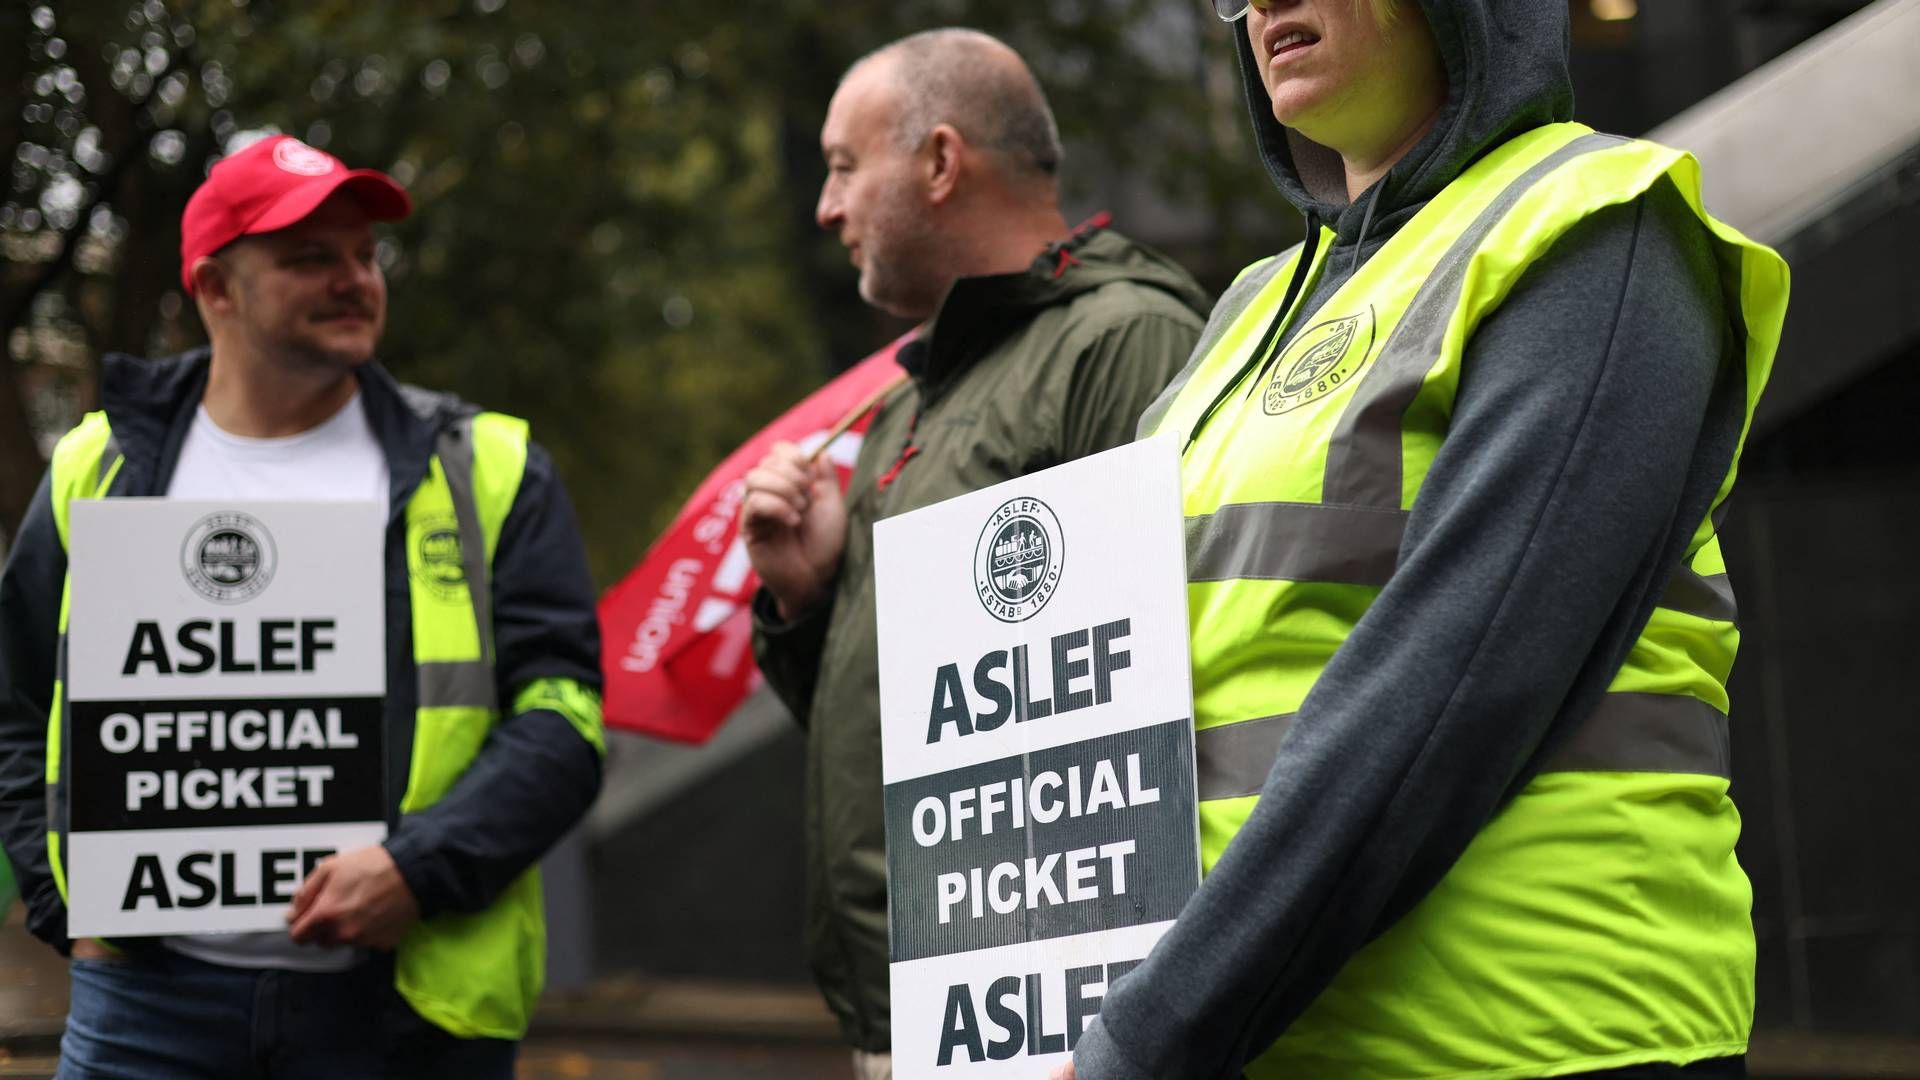 Aslef-medlemmer har også tidligere i år strejket.